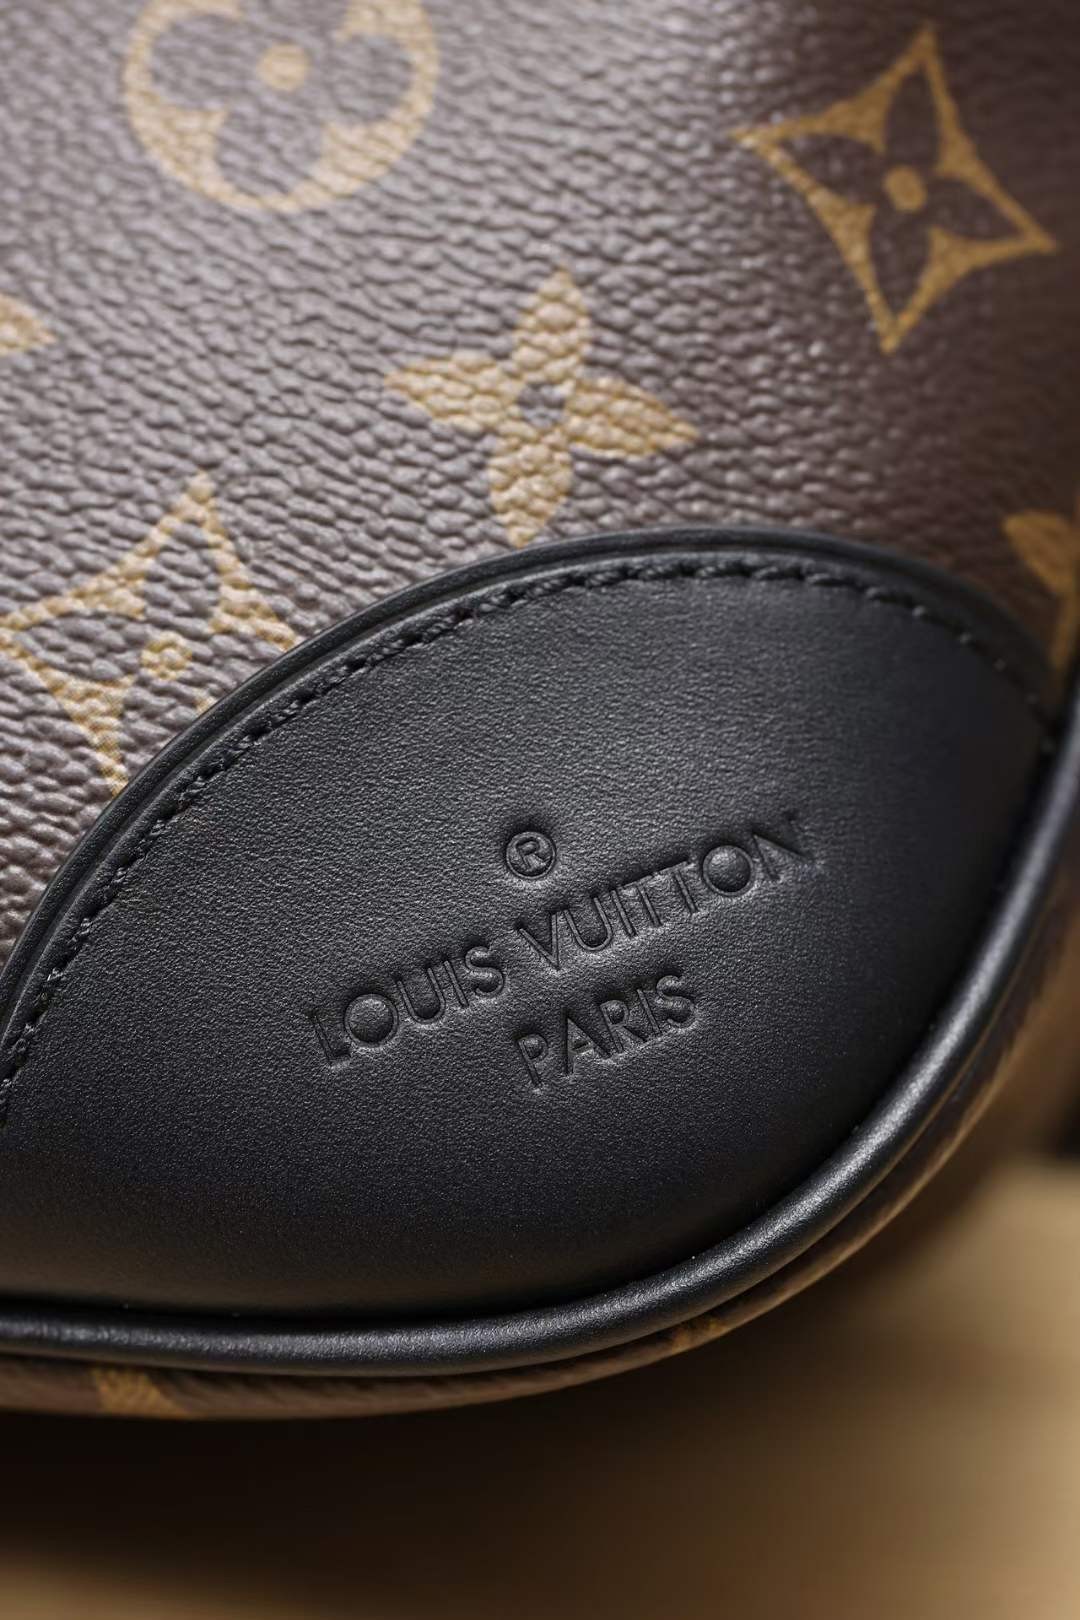 Louis Vuitton M45831 BOULOGNE top replica handbags Leather and hardware details (2022 Edition)-Paras laatu väärennetty Louis Vuitton laukku verkkokauppa, replika suunnittelija laukku ru